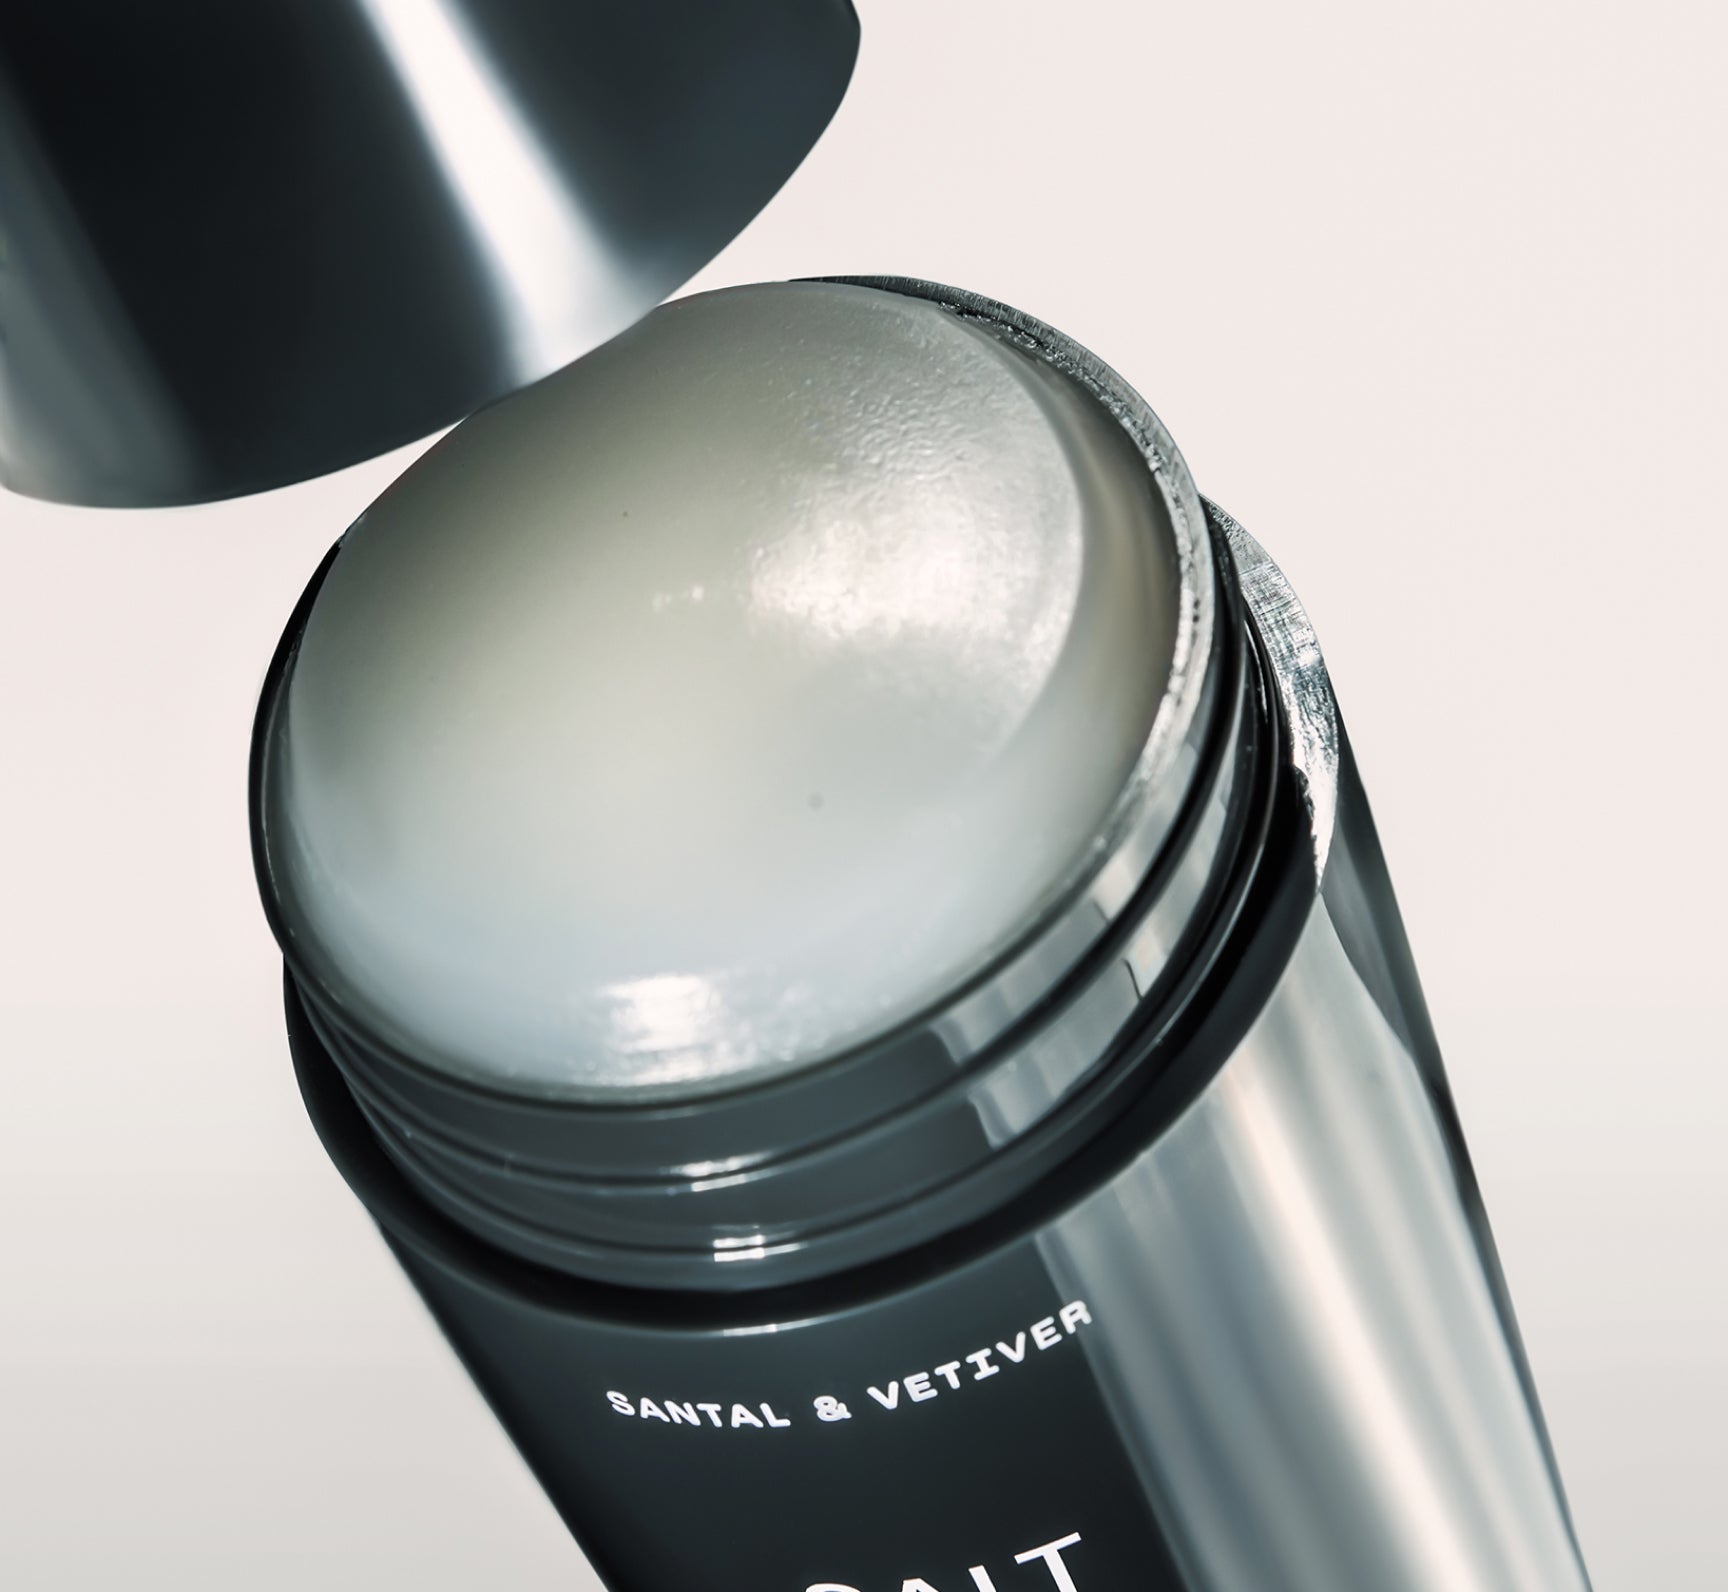 Déodorant gel peau sensible – Santal & Vétiver Salt & Stone Suisse